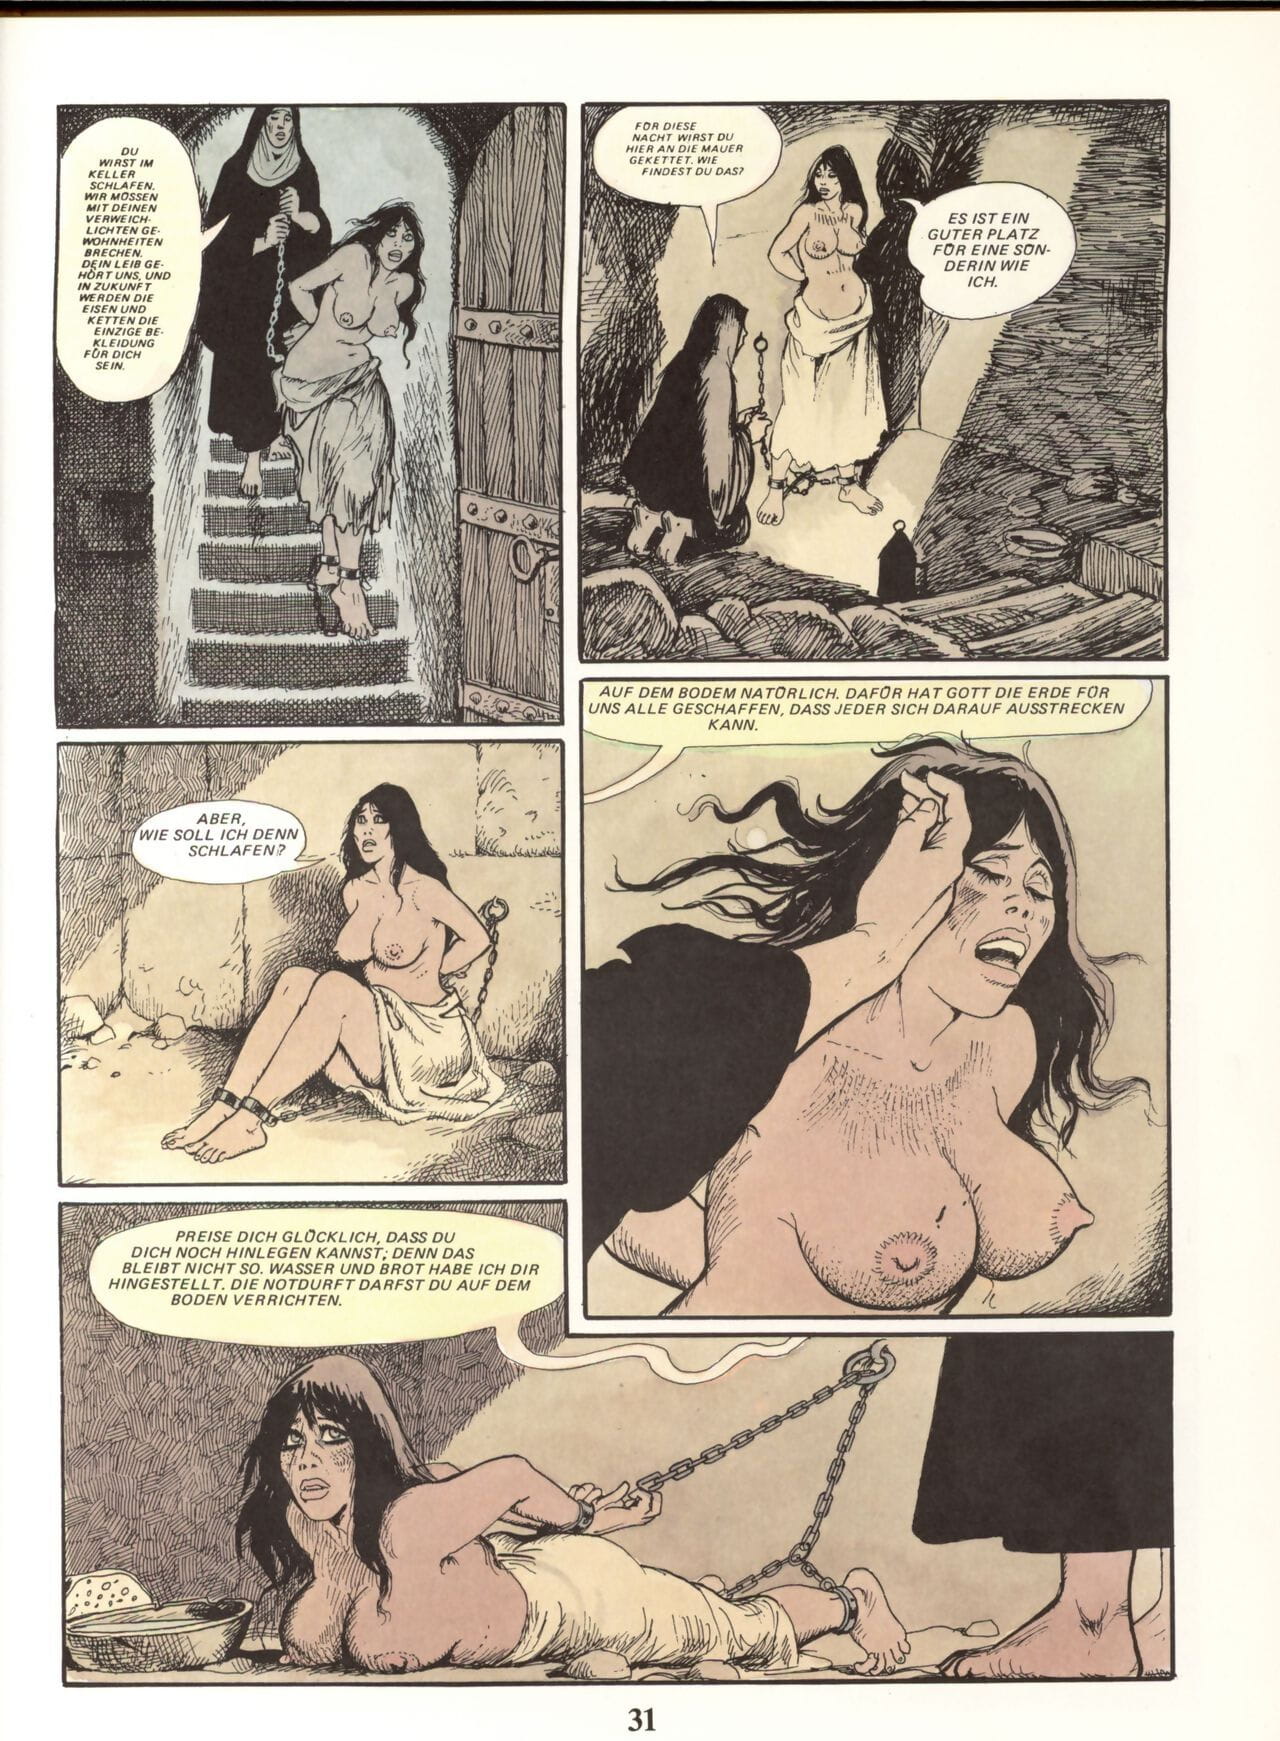 Marie Gabrielle De San eutropo #02 parte 2 page 1